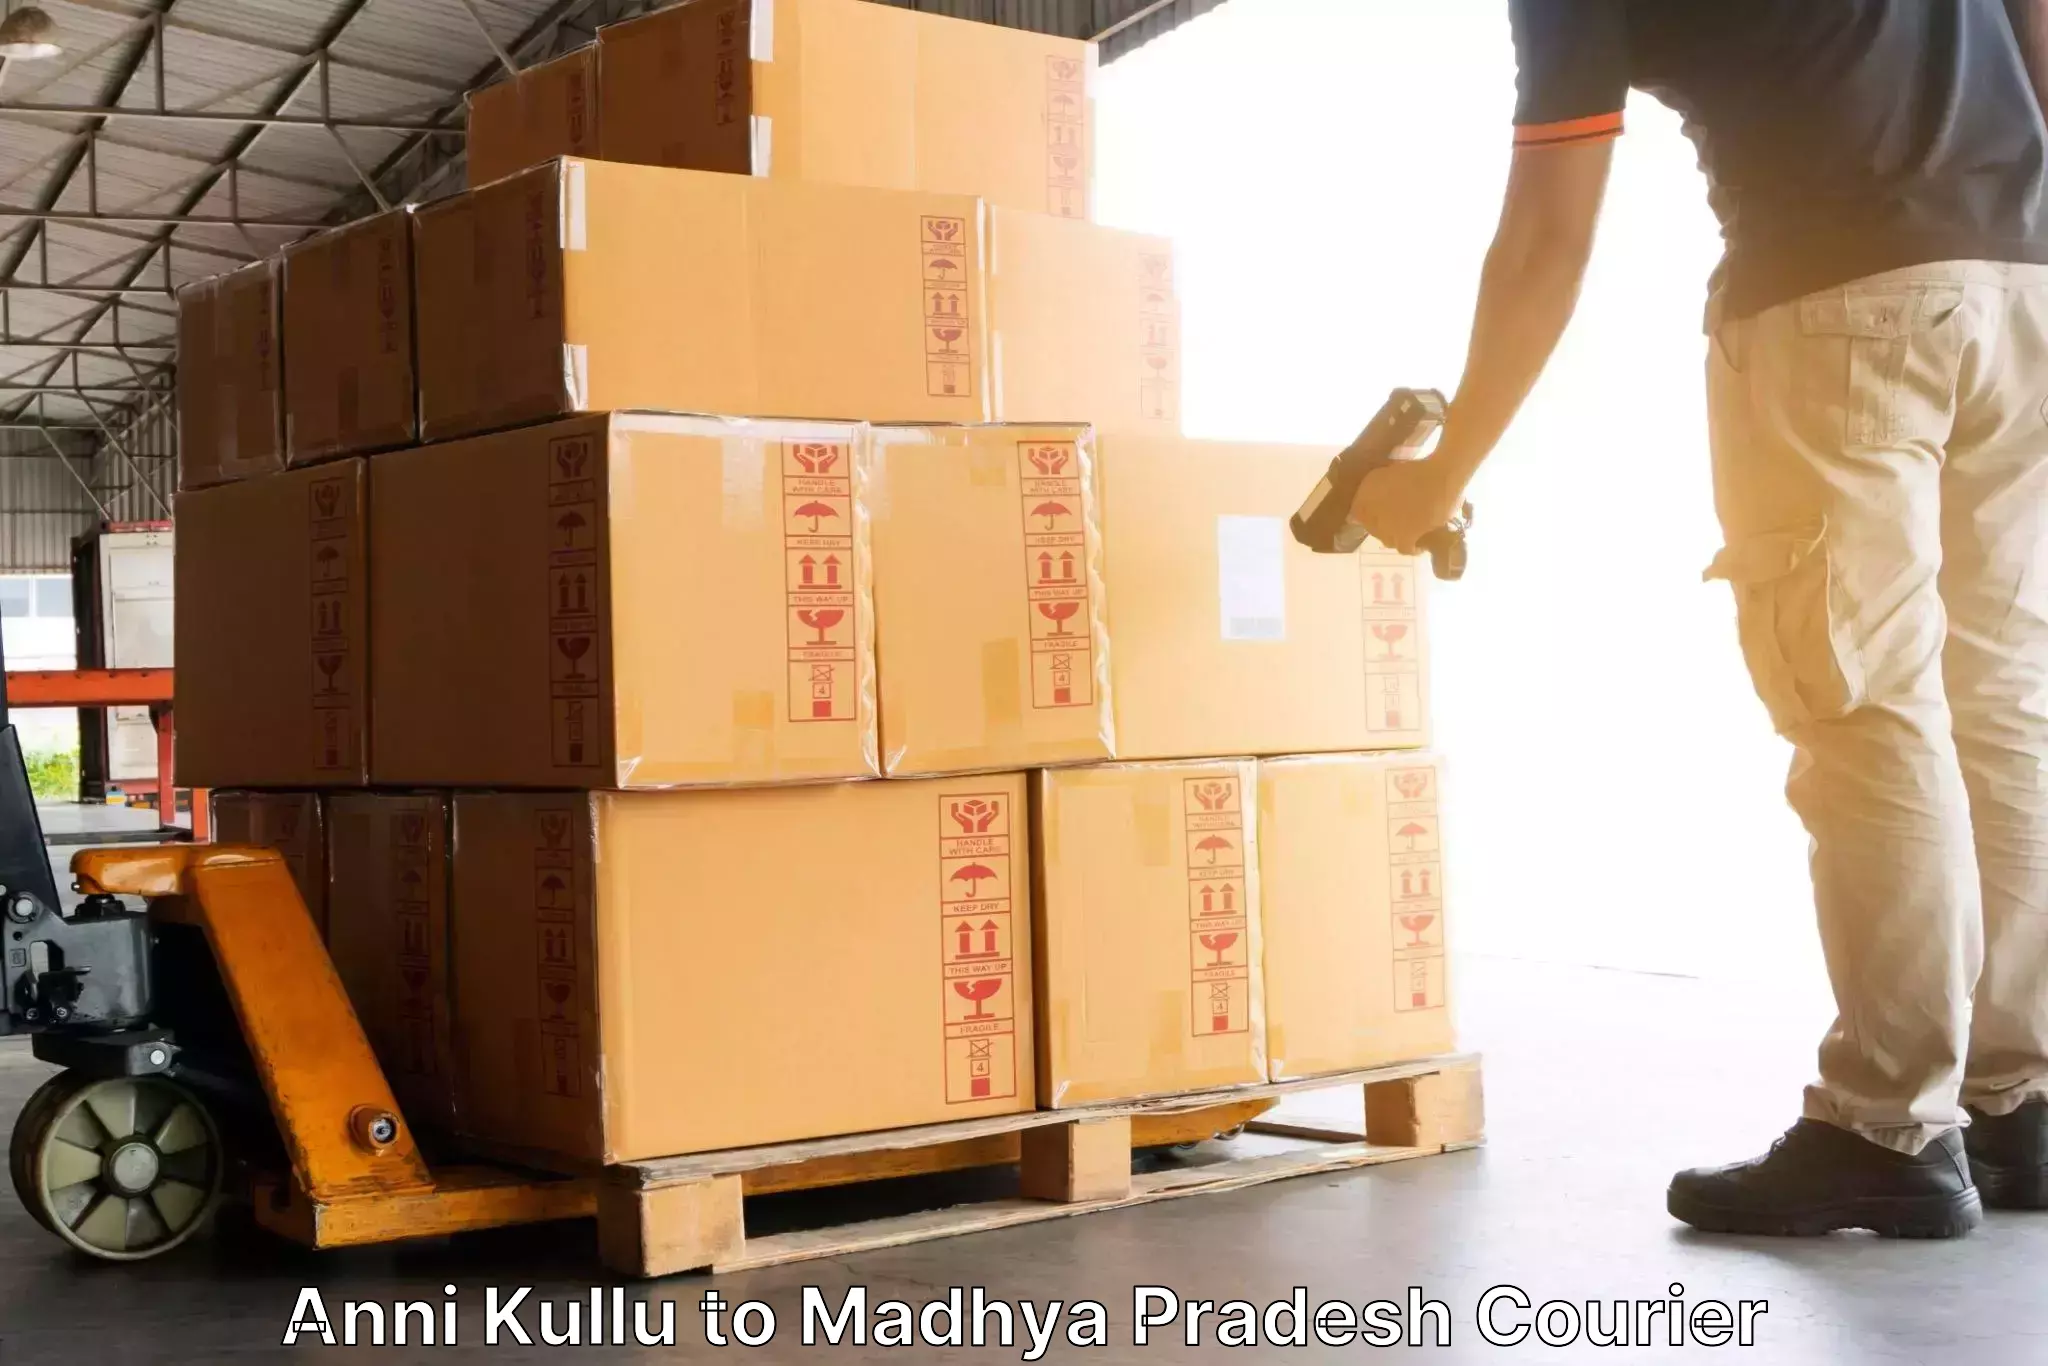 Express logistics providers Anni Kullu to Vidisha